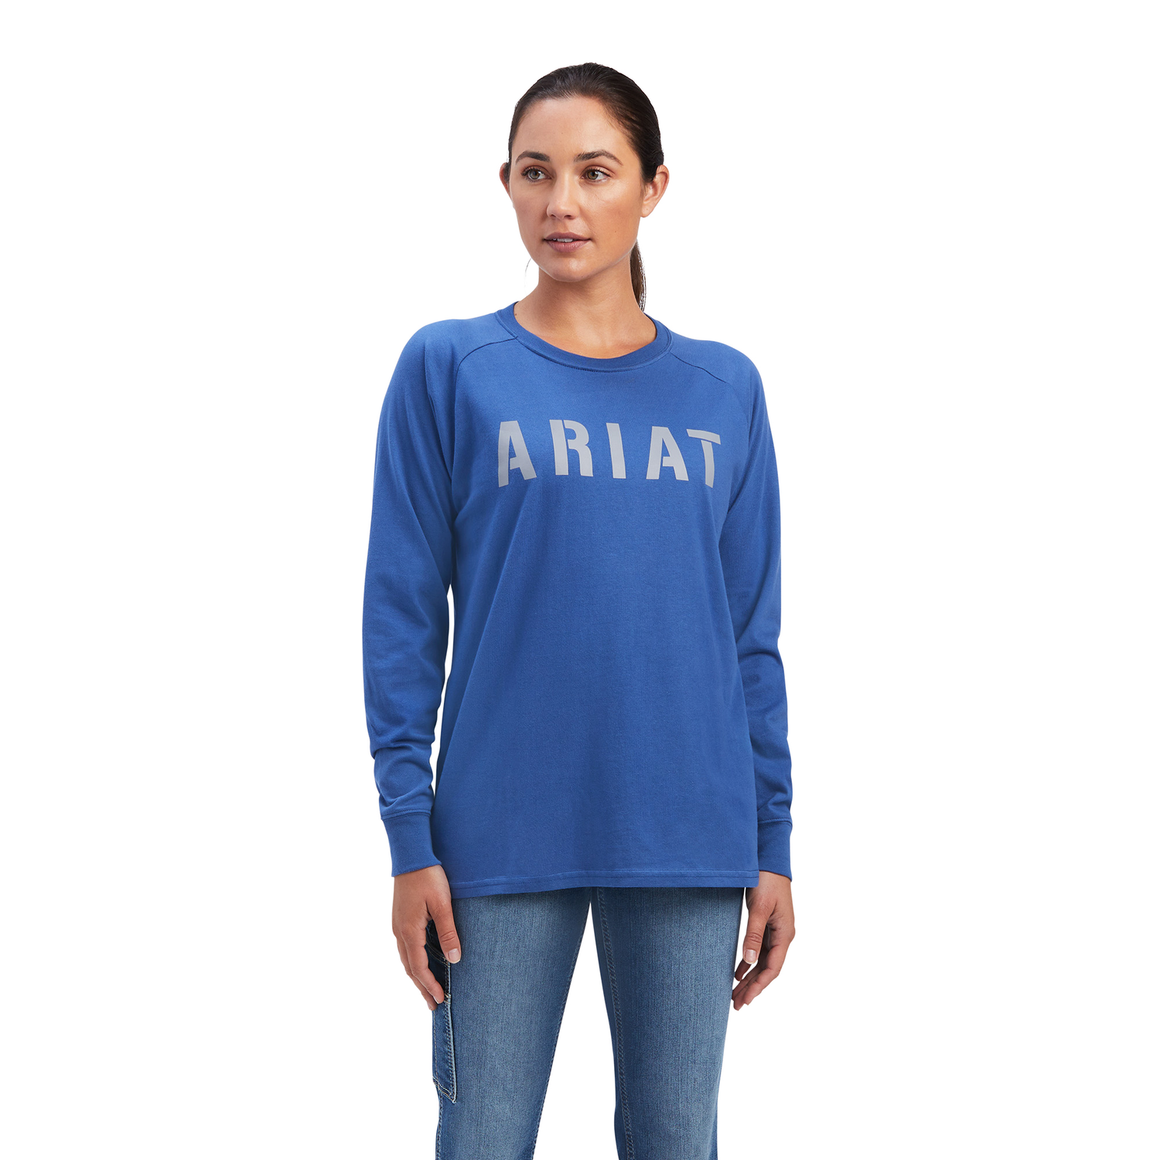 Ariat Womens Rebar CottonStrong Block L/S T-Shirt True Navy